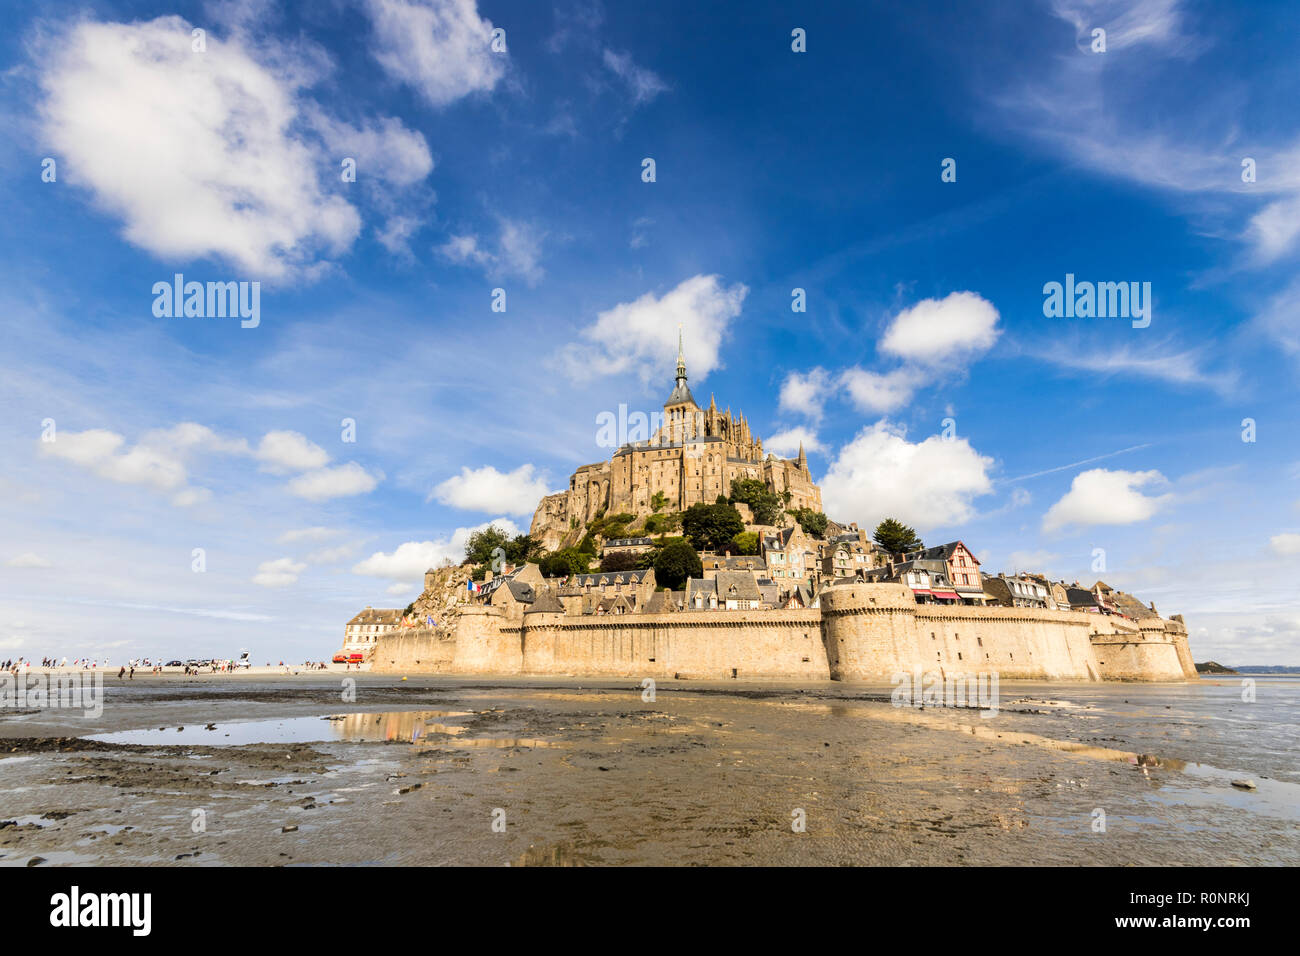 Le Mont-Saint-Michel, Frankreich, eine Insel und Kloster in der Normandie, Weltkulturerbe seit 1979. Blick von der Sand bei Ebbe Stockfoto